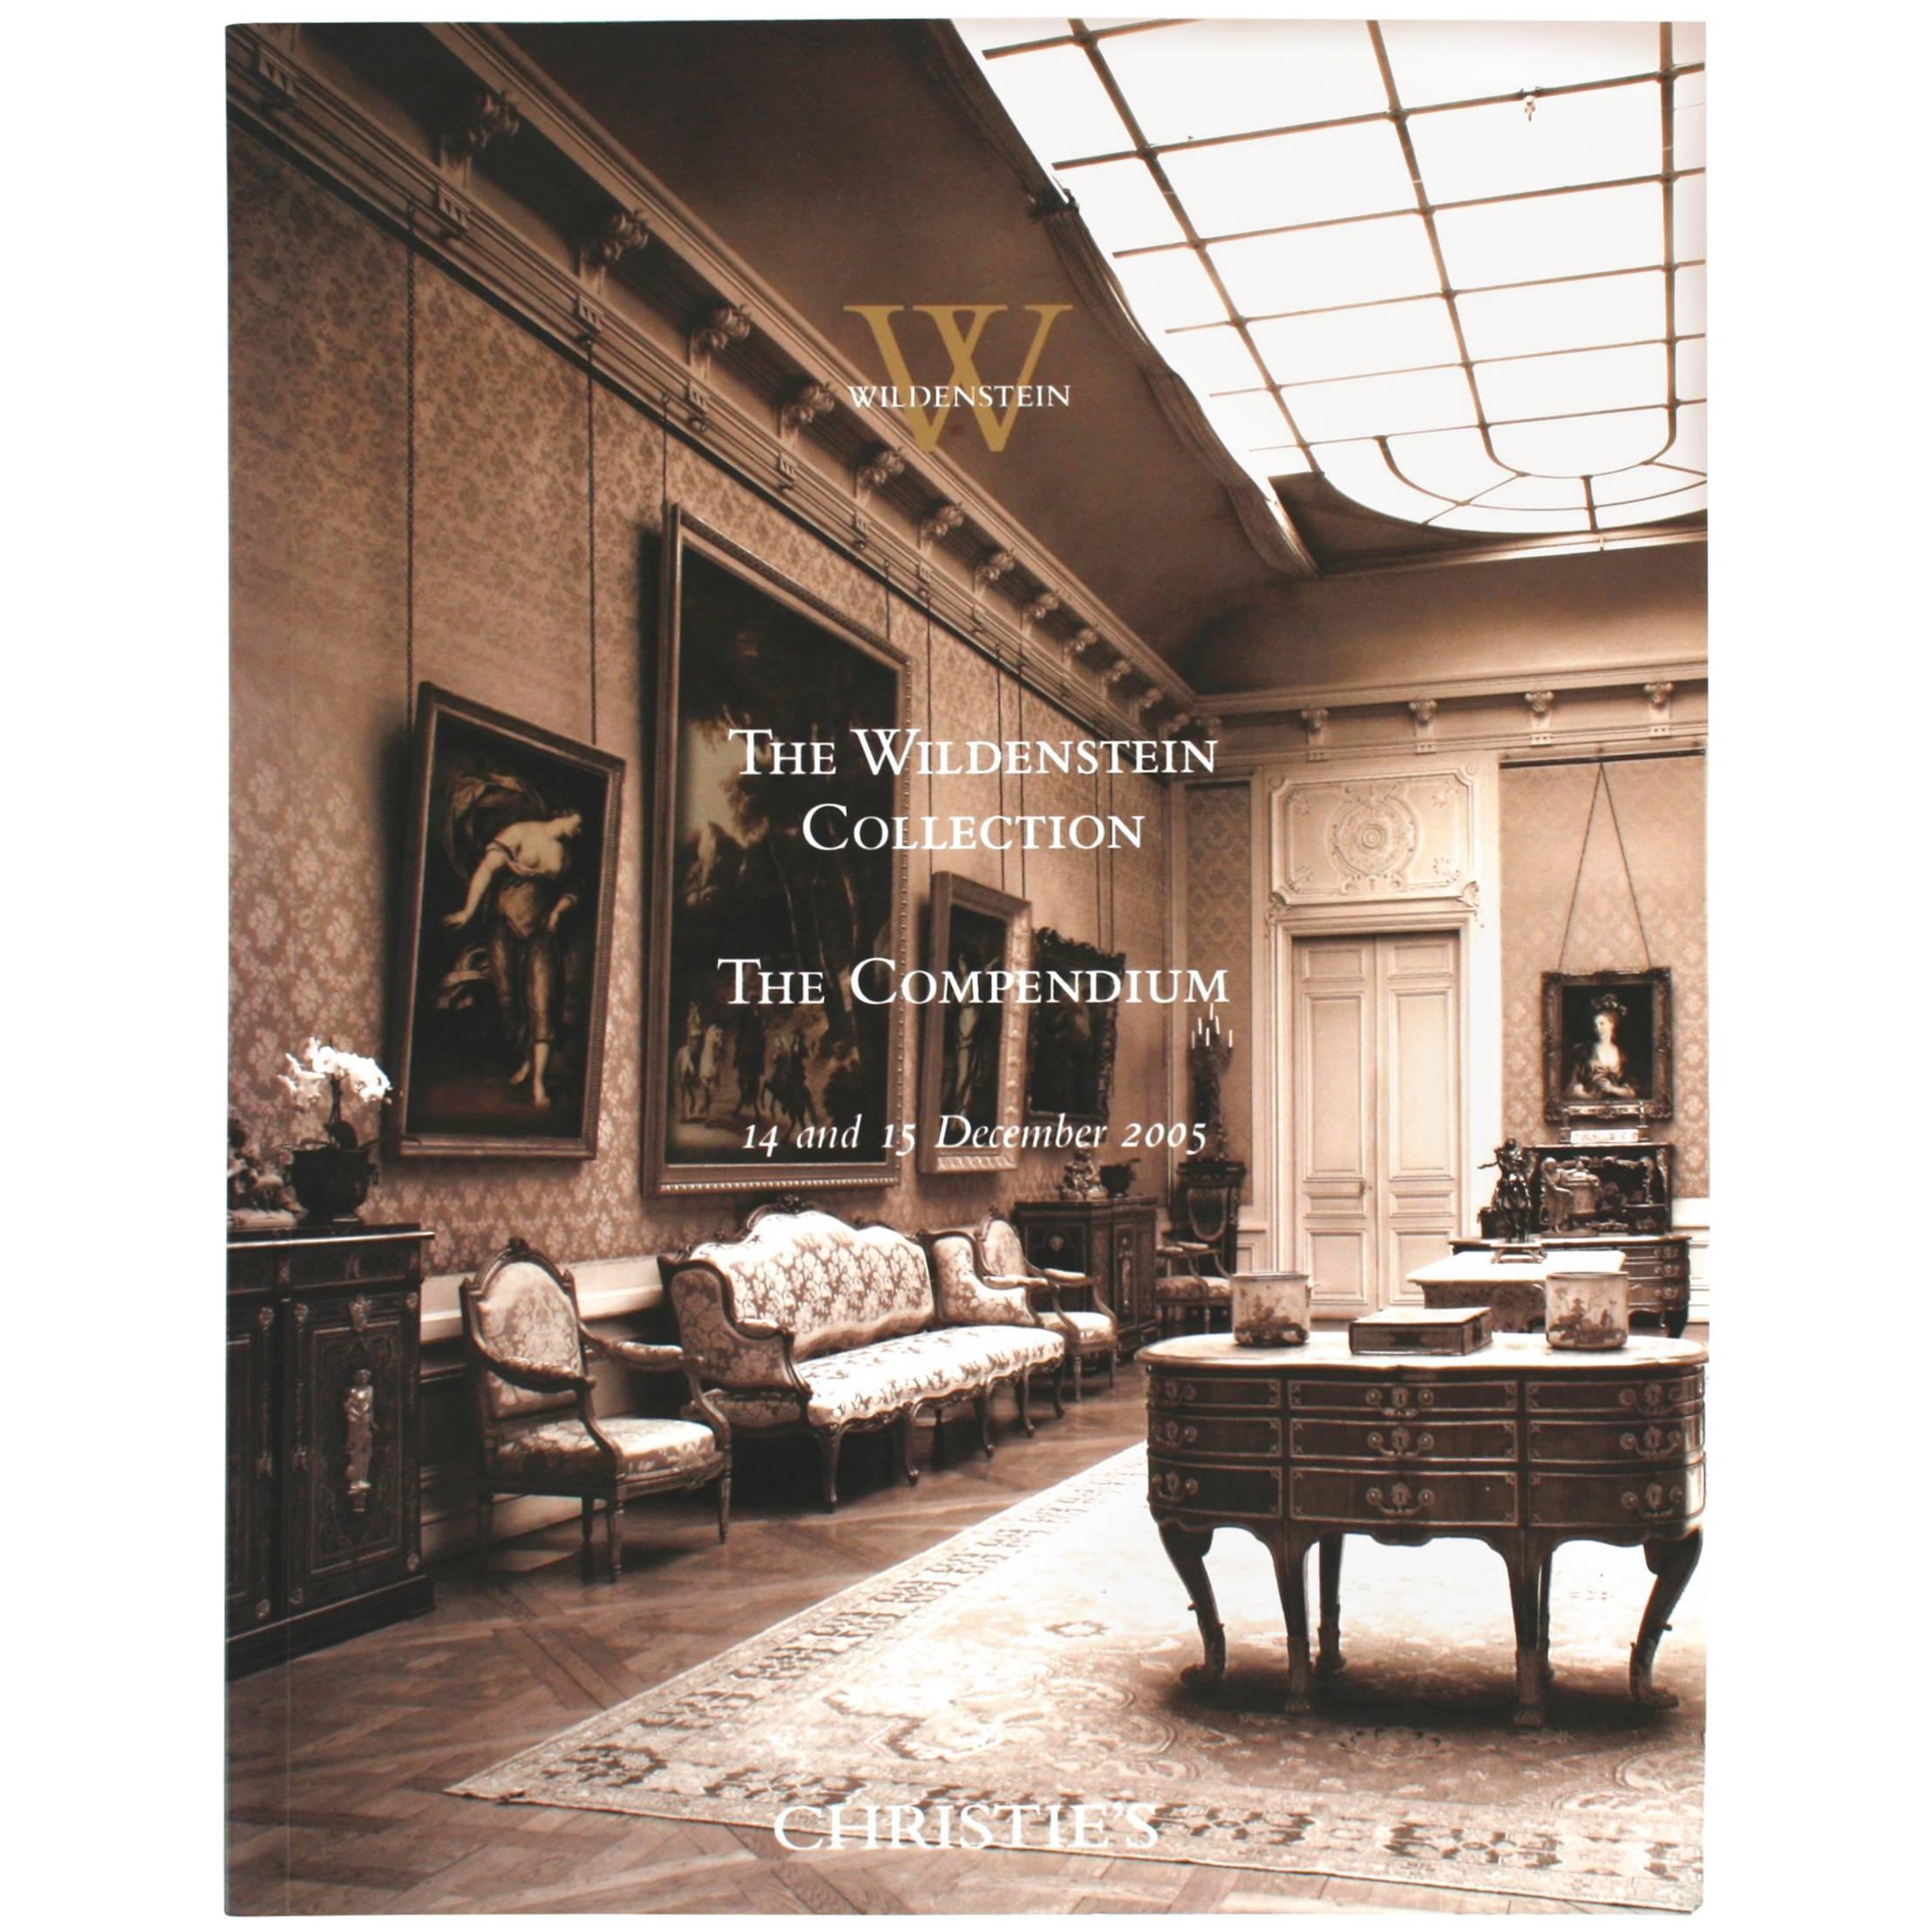 Wildenstein Collection, the Compendium 14-15 December 2005, Christie's